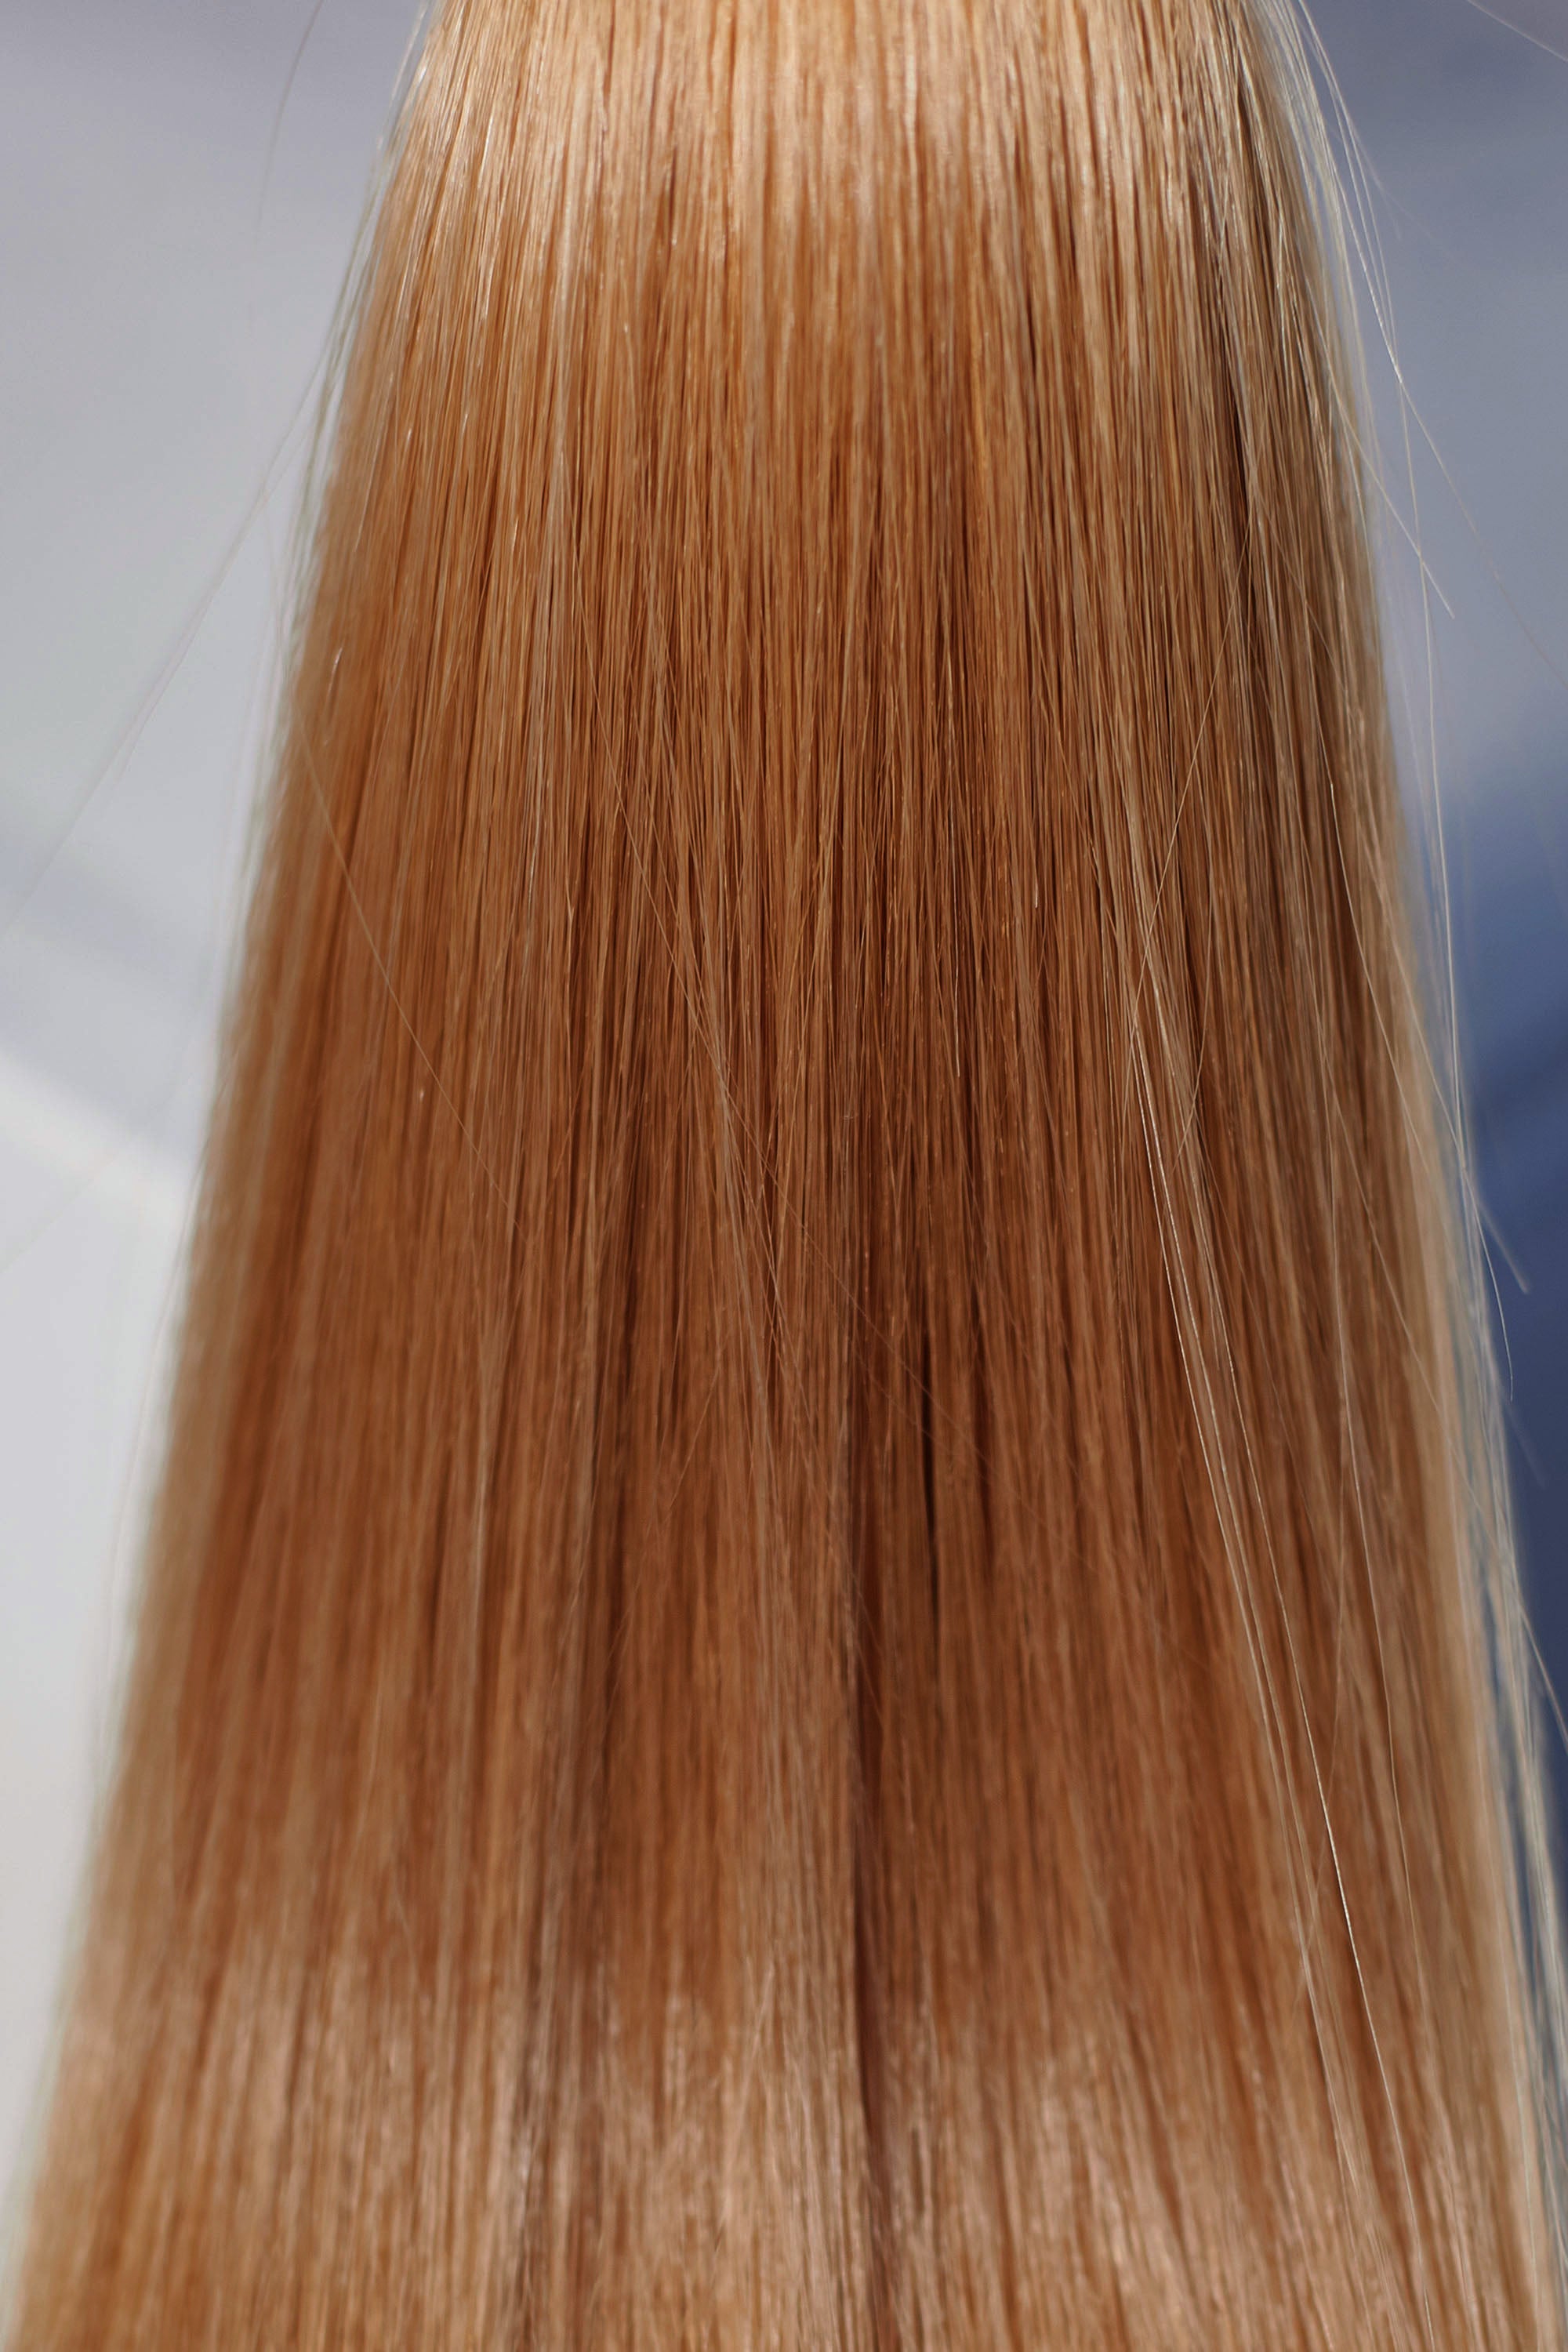 Behair professional Bulk hair "Premium" 24" (60cm) Natural Straight Honey Wheat #12 - 25g hair extensions